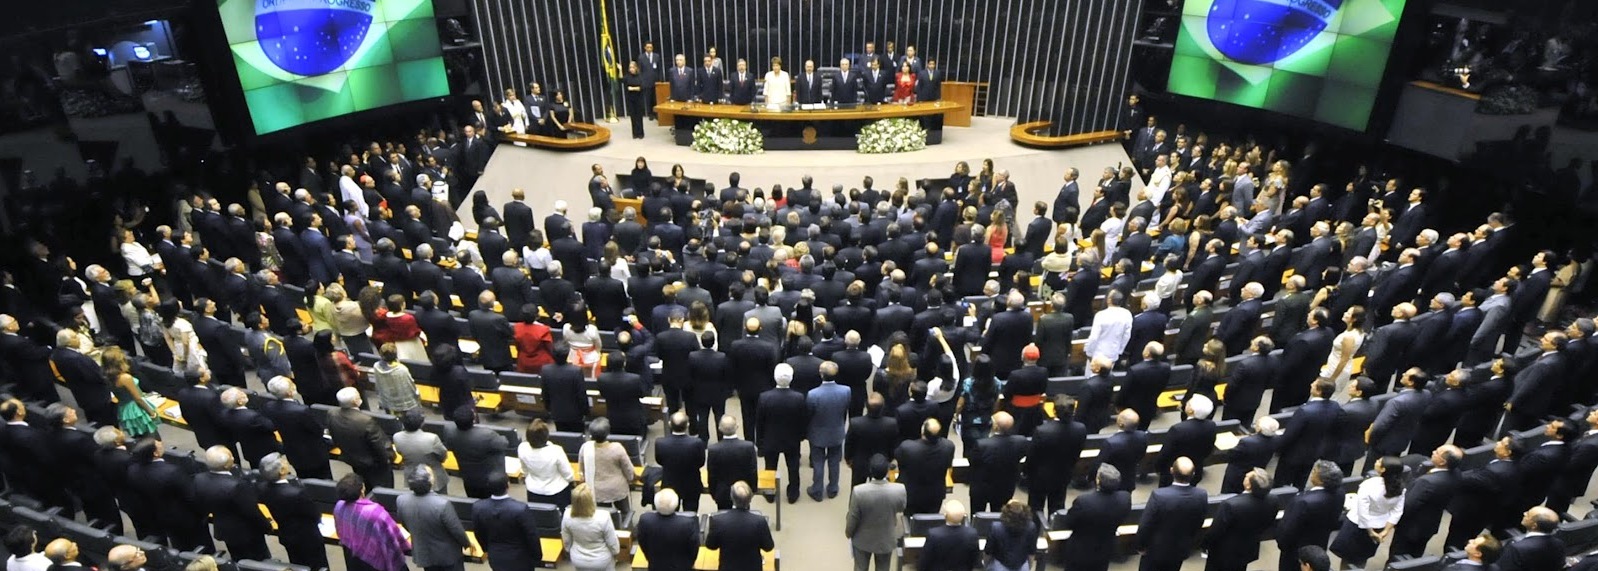 REFORMAS VÃO PASSAR ATÉ DE FORMA SURPREENDENTE – Congresso deverá votá-las, mas, em defesa do Brasil.